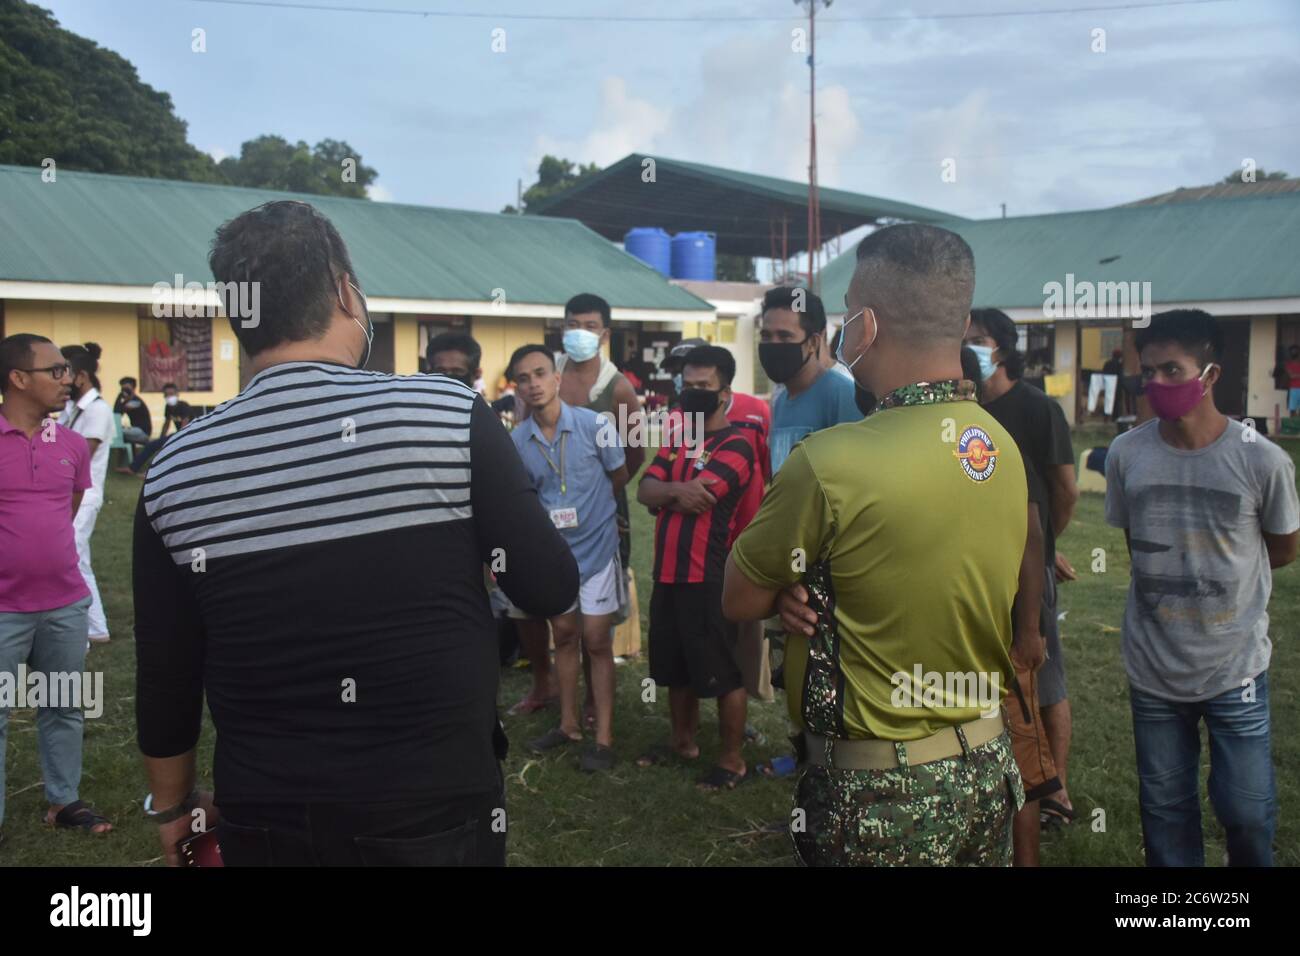 Les LSI reçoivent des dons alimentaires des Marines des Philippines. Des volontaires des Marines Philippines (RedShield) de la 2e Brigade Marine Tawi-Tawi ont préparé des repas pour 395 déportés philippins de Saba arrivés à Bongao le 3 juillet 202. Les individus échoués localement ont temporairement abrité au complexe sportif DepEd, Bongao, Tawi-Tawi. 2MBDE, Philippines Marines régulièrement surveiller les LSI qui ont séjourné temporairement à l'école au cours des deux dernières semaines. Le personnel de RedShield sous la supervision du col. ARTURO G. ROJAS PN (M)(GSC) a lancé le programme d'alimentation à notre individu local toronné ou LSI and Banque D'Images